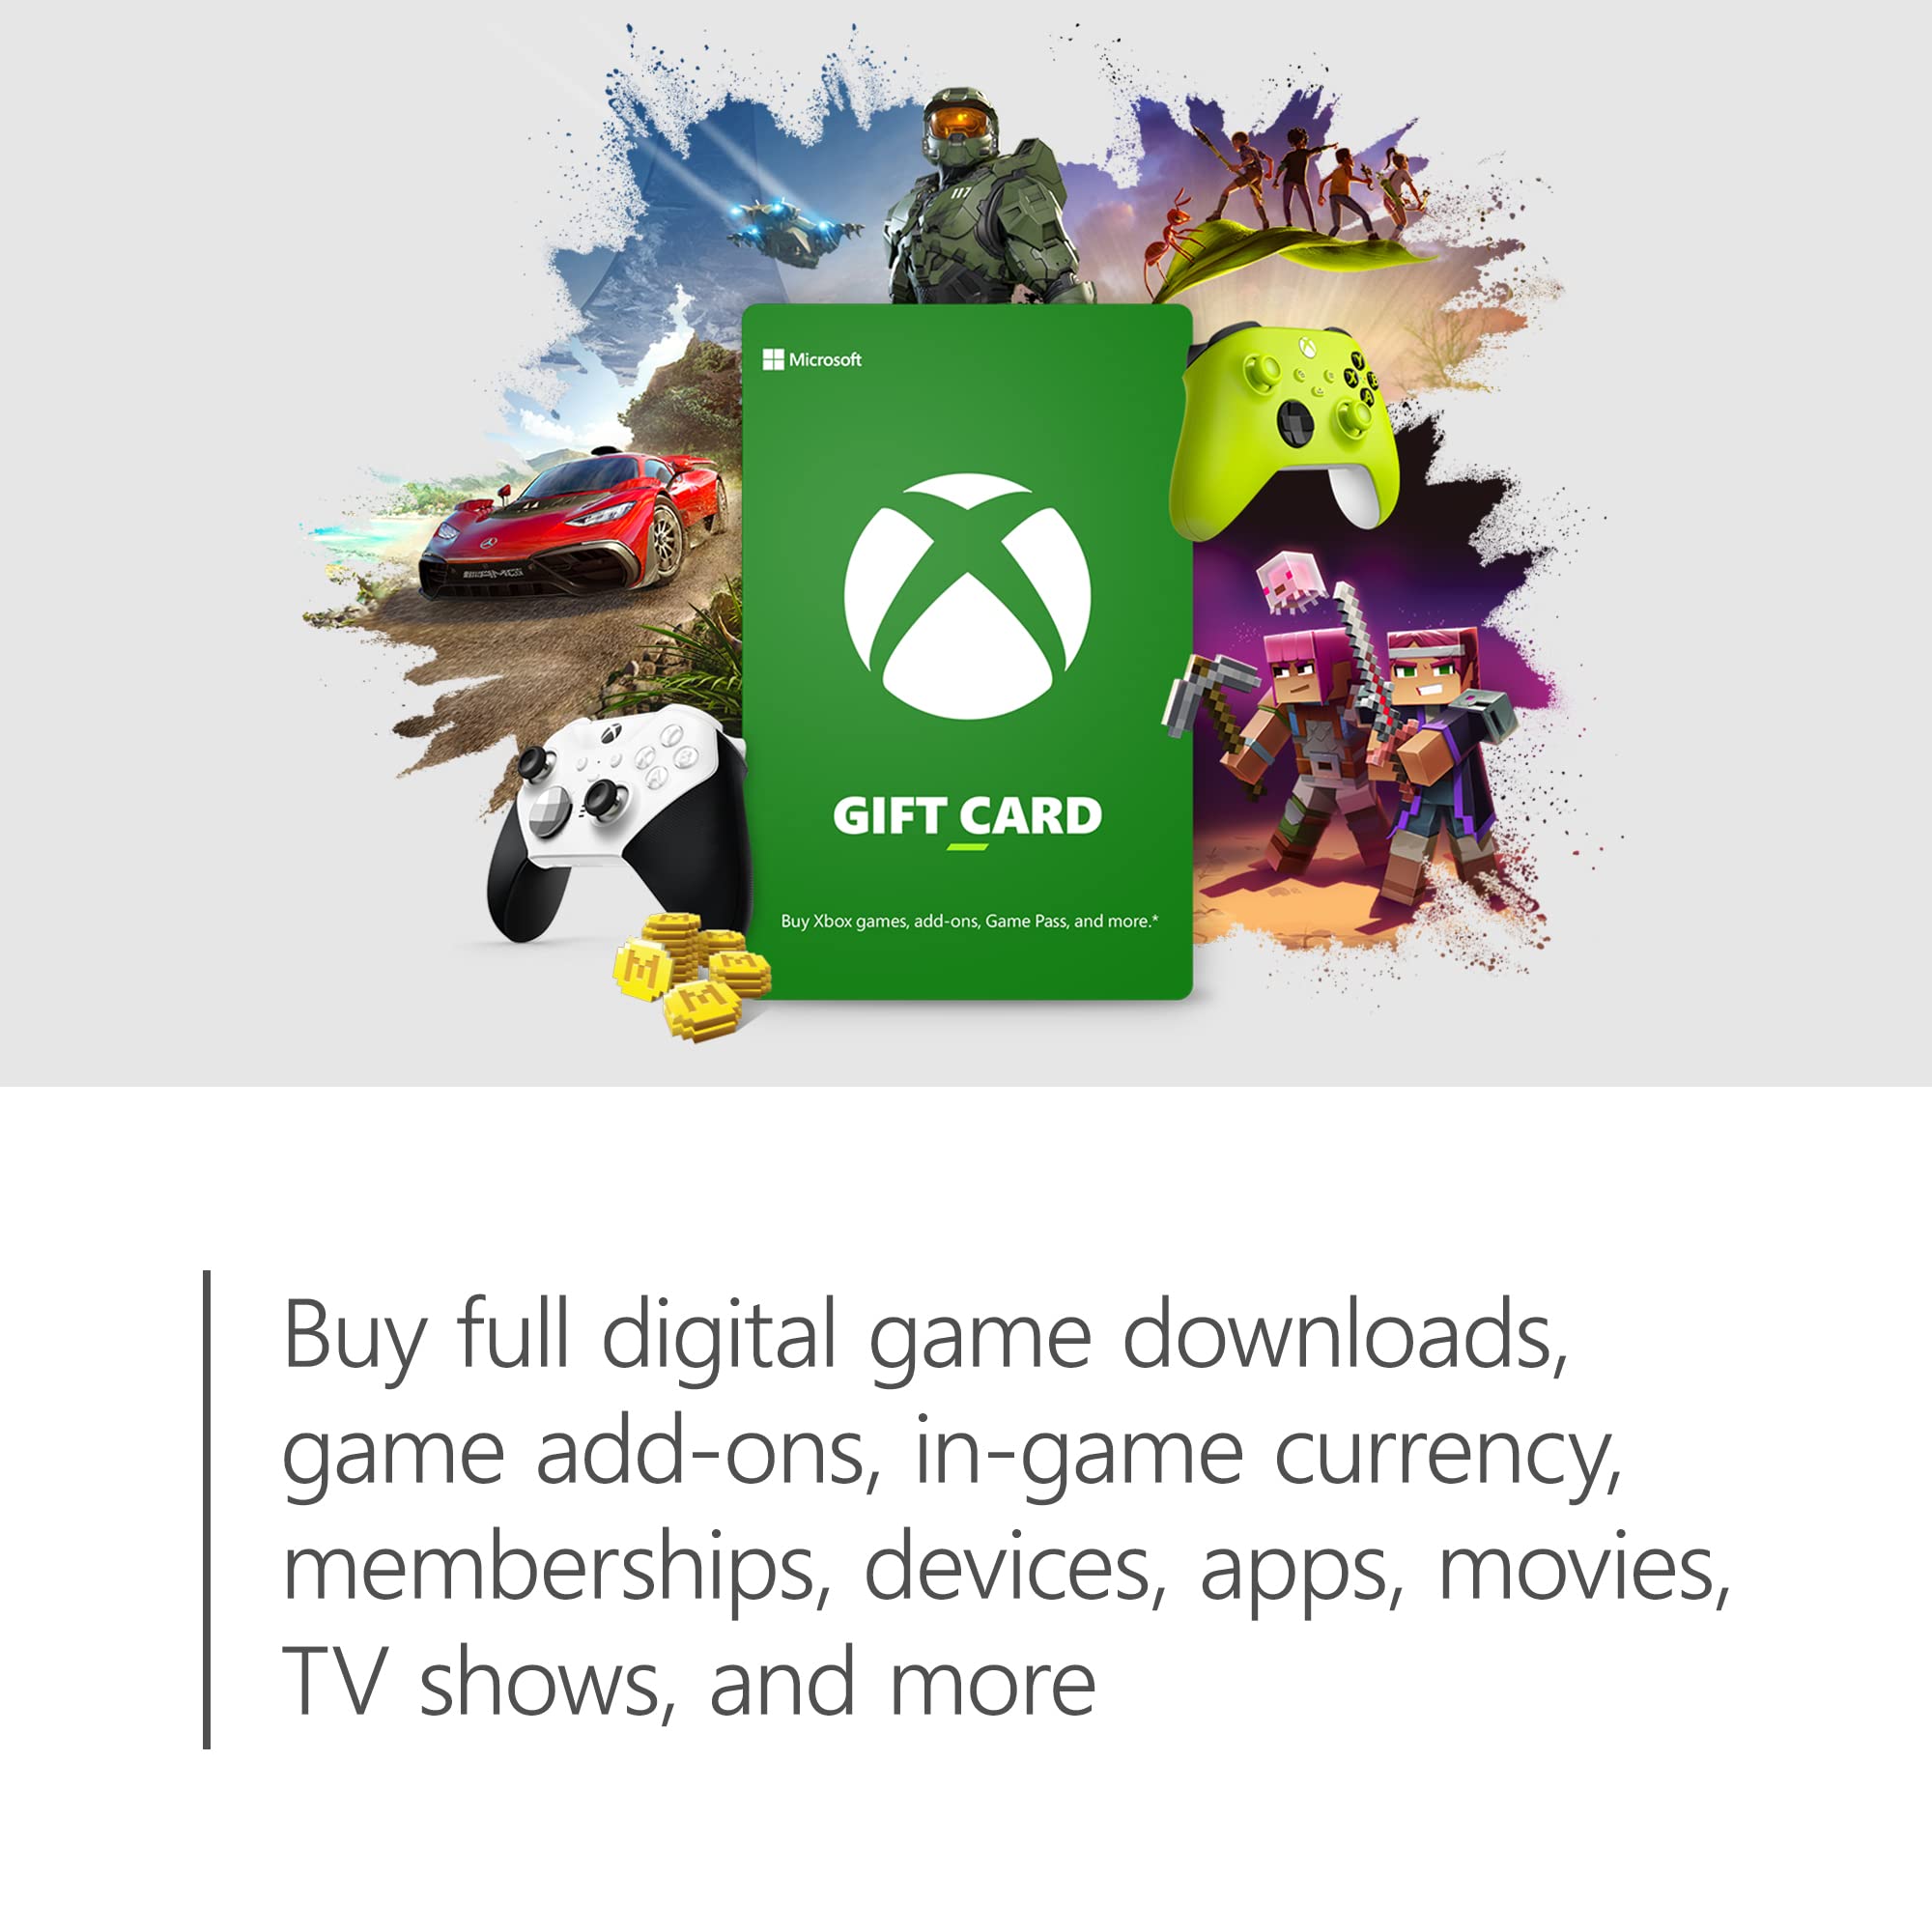 $20 Xbox Gift Card [Digital Code]